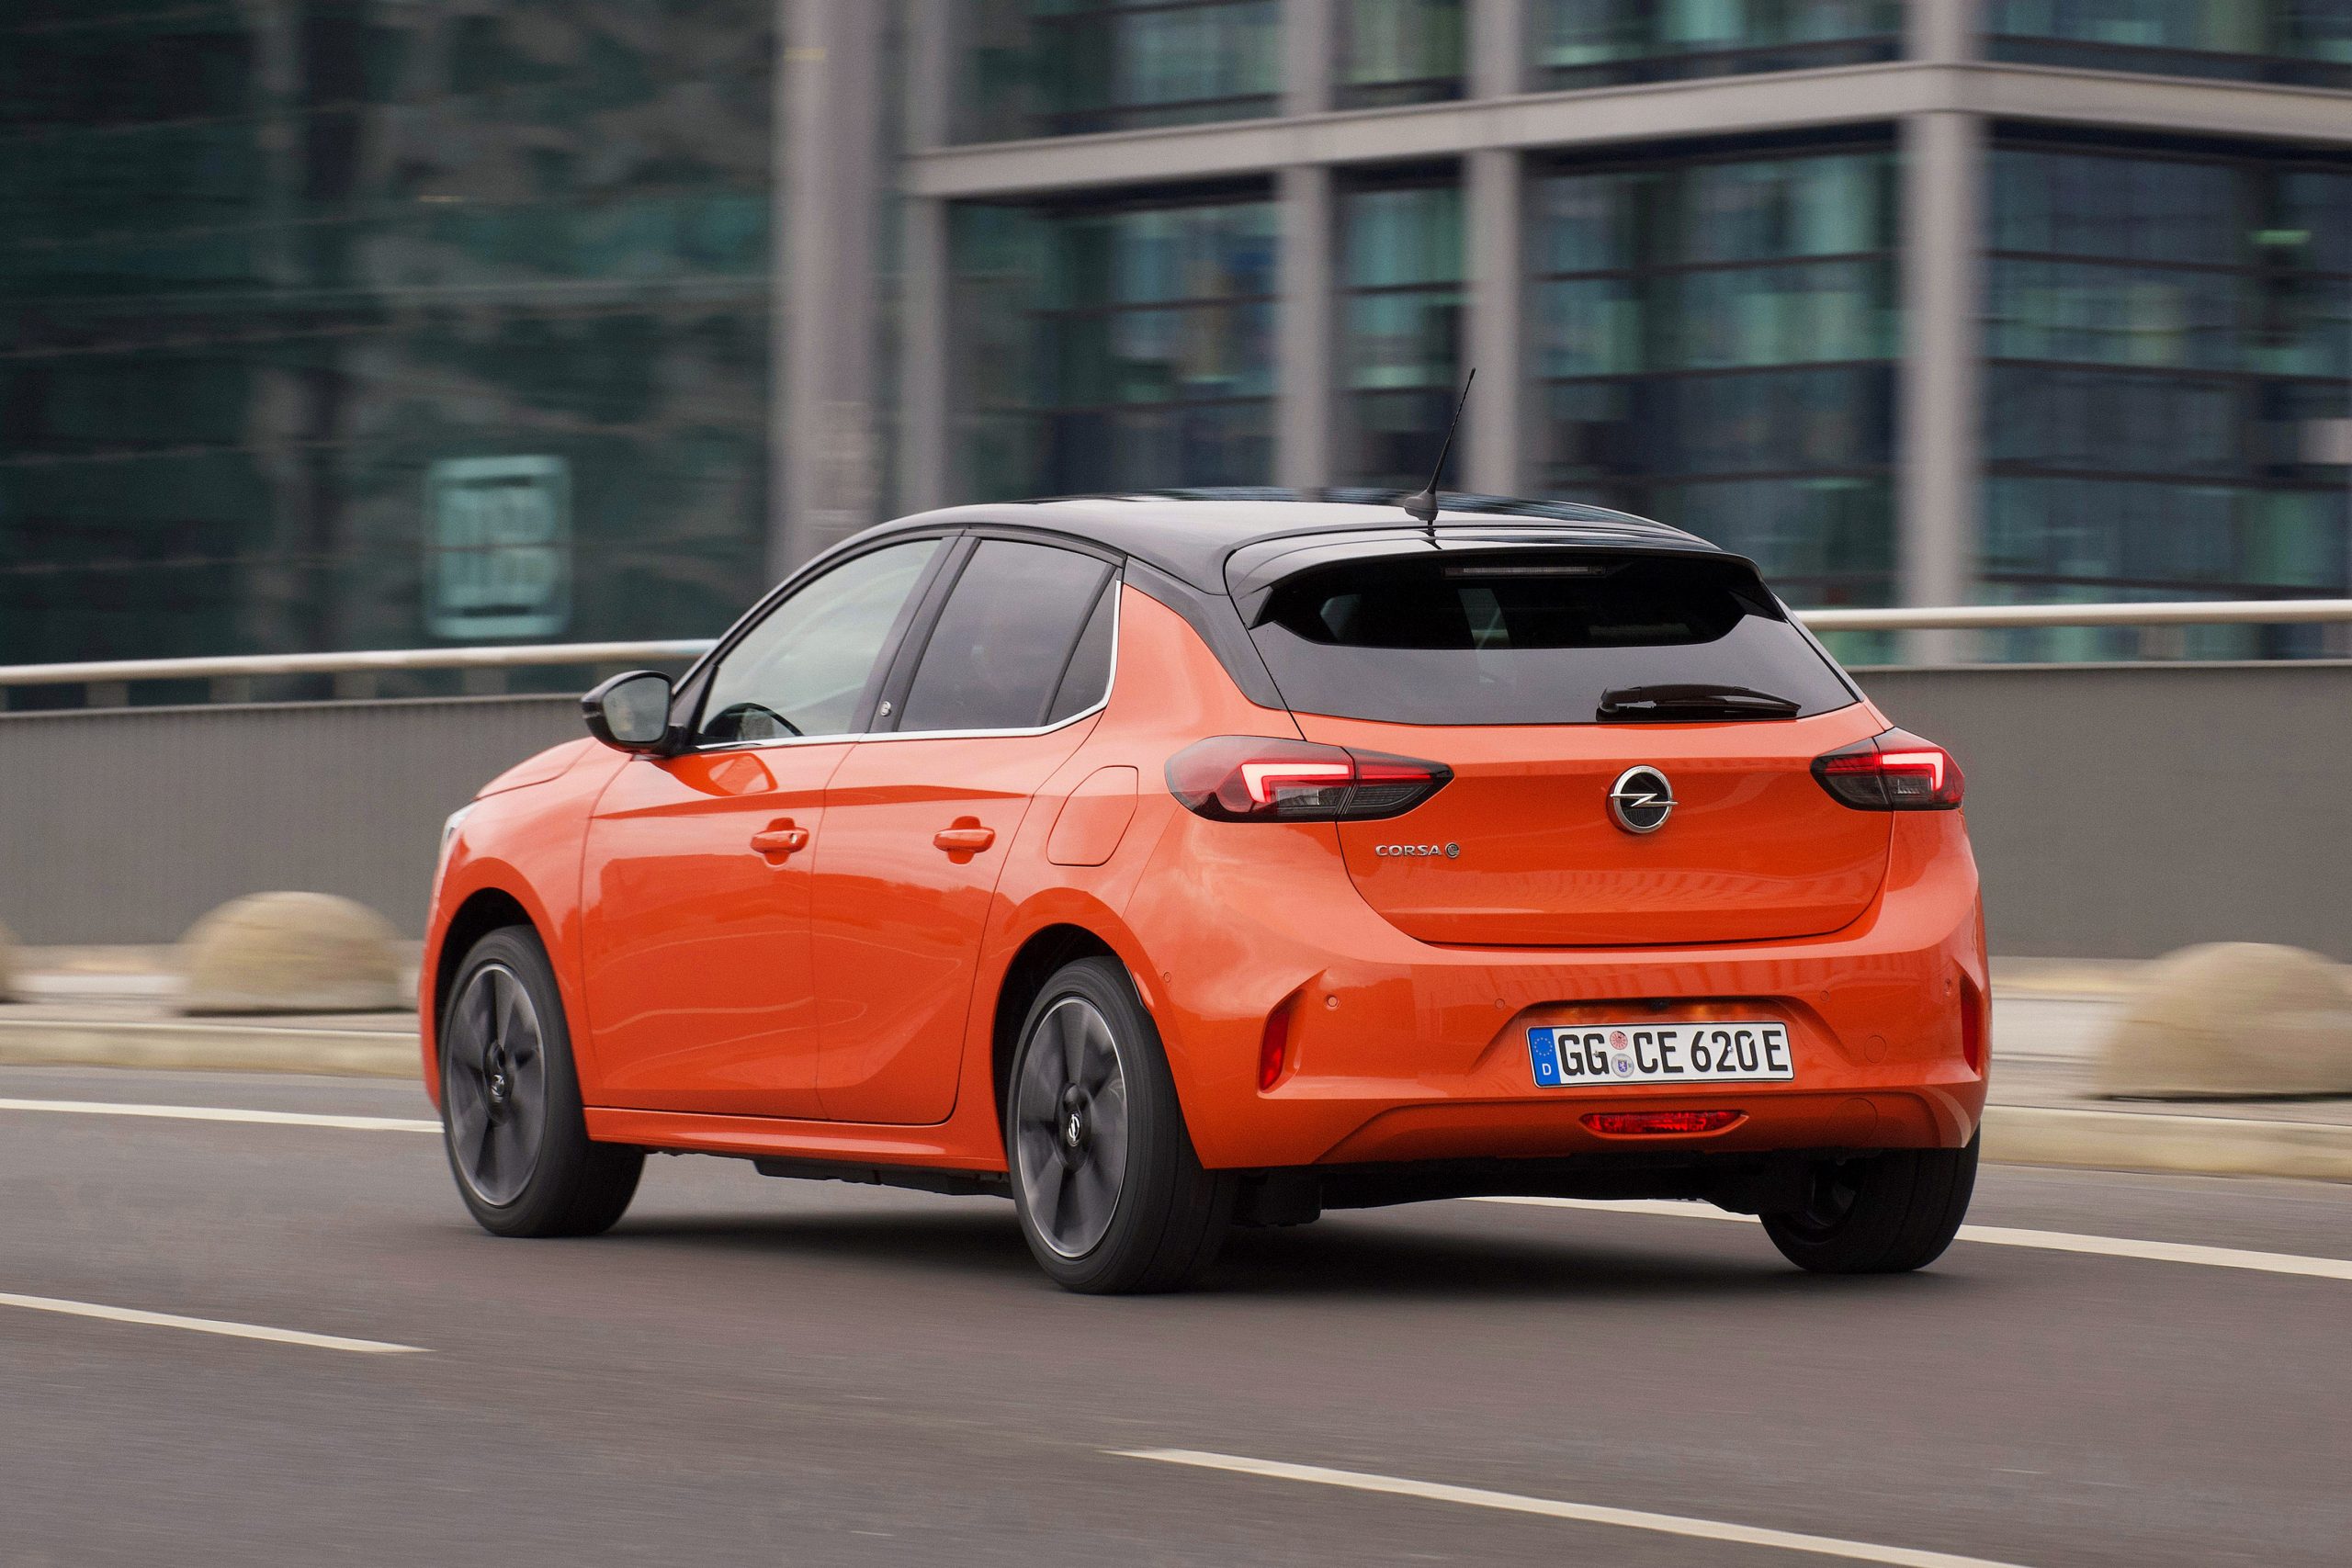 Opel Corsa popularizează electromobilitatea. Cu ajutorul celei de-a șasea generații complet noi de autovehicule Corsa, Opel oferă în premieră o versiune electrică pe baterie cu o autonomie de până la 337 km